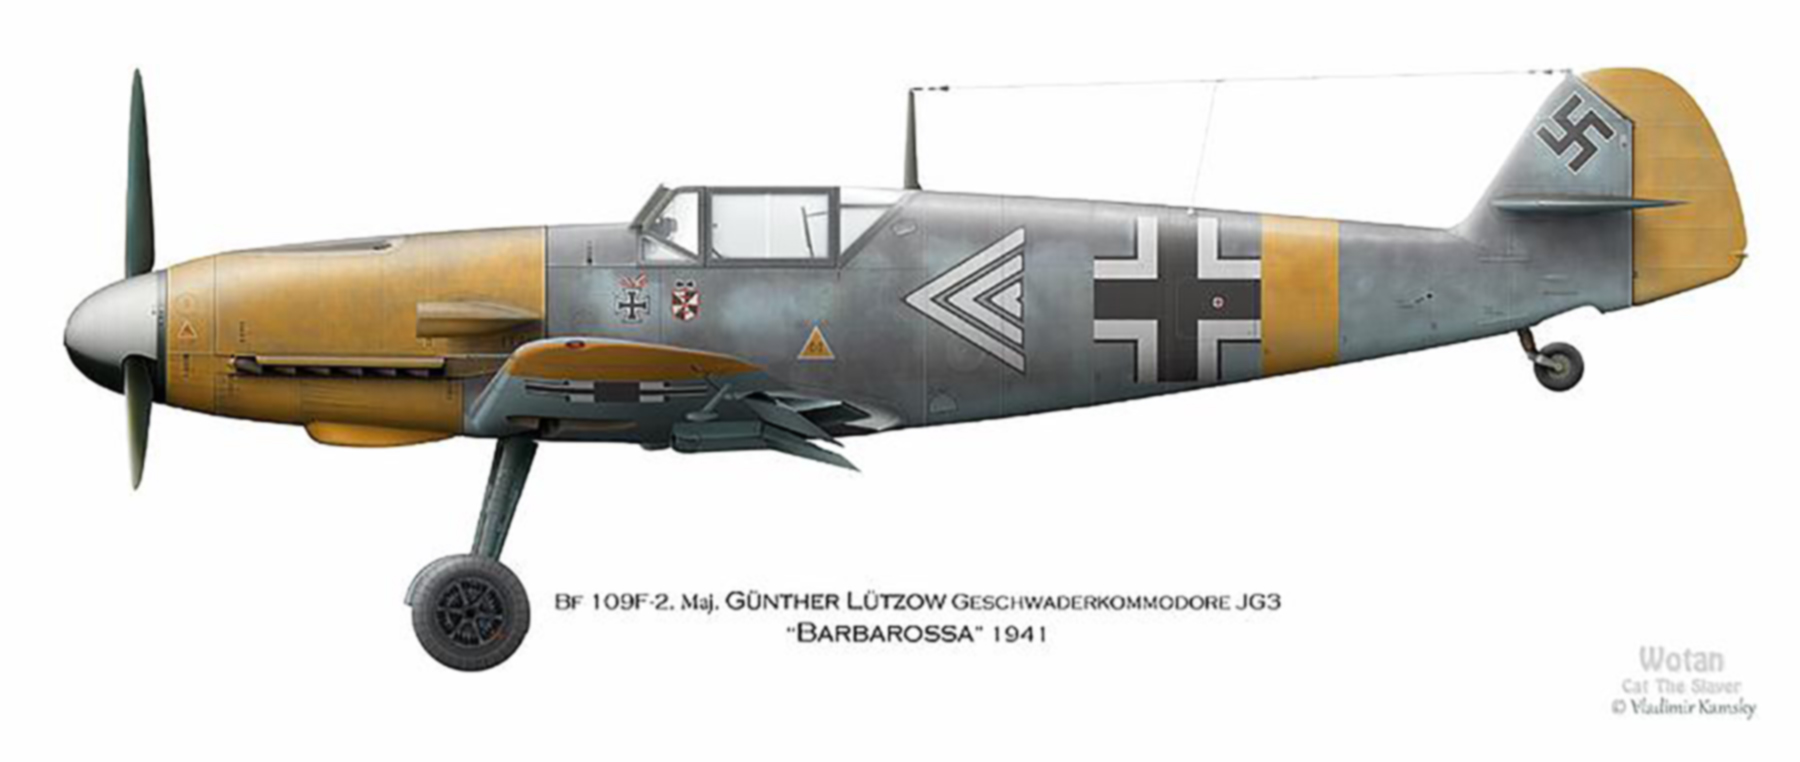 Messerschmitt Bf 109F2 Stab JG3 Gunther Lutzow Russia 1941 by Vladimir Kamsky 0A